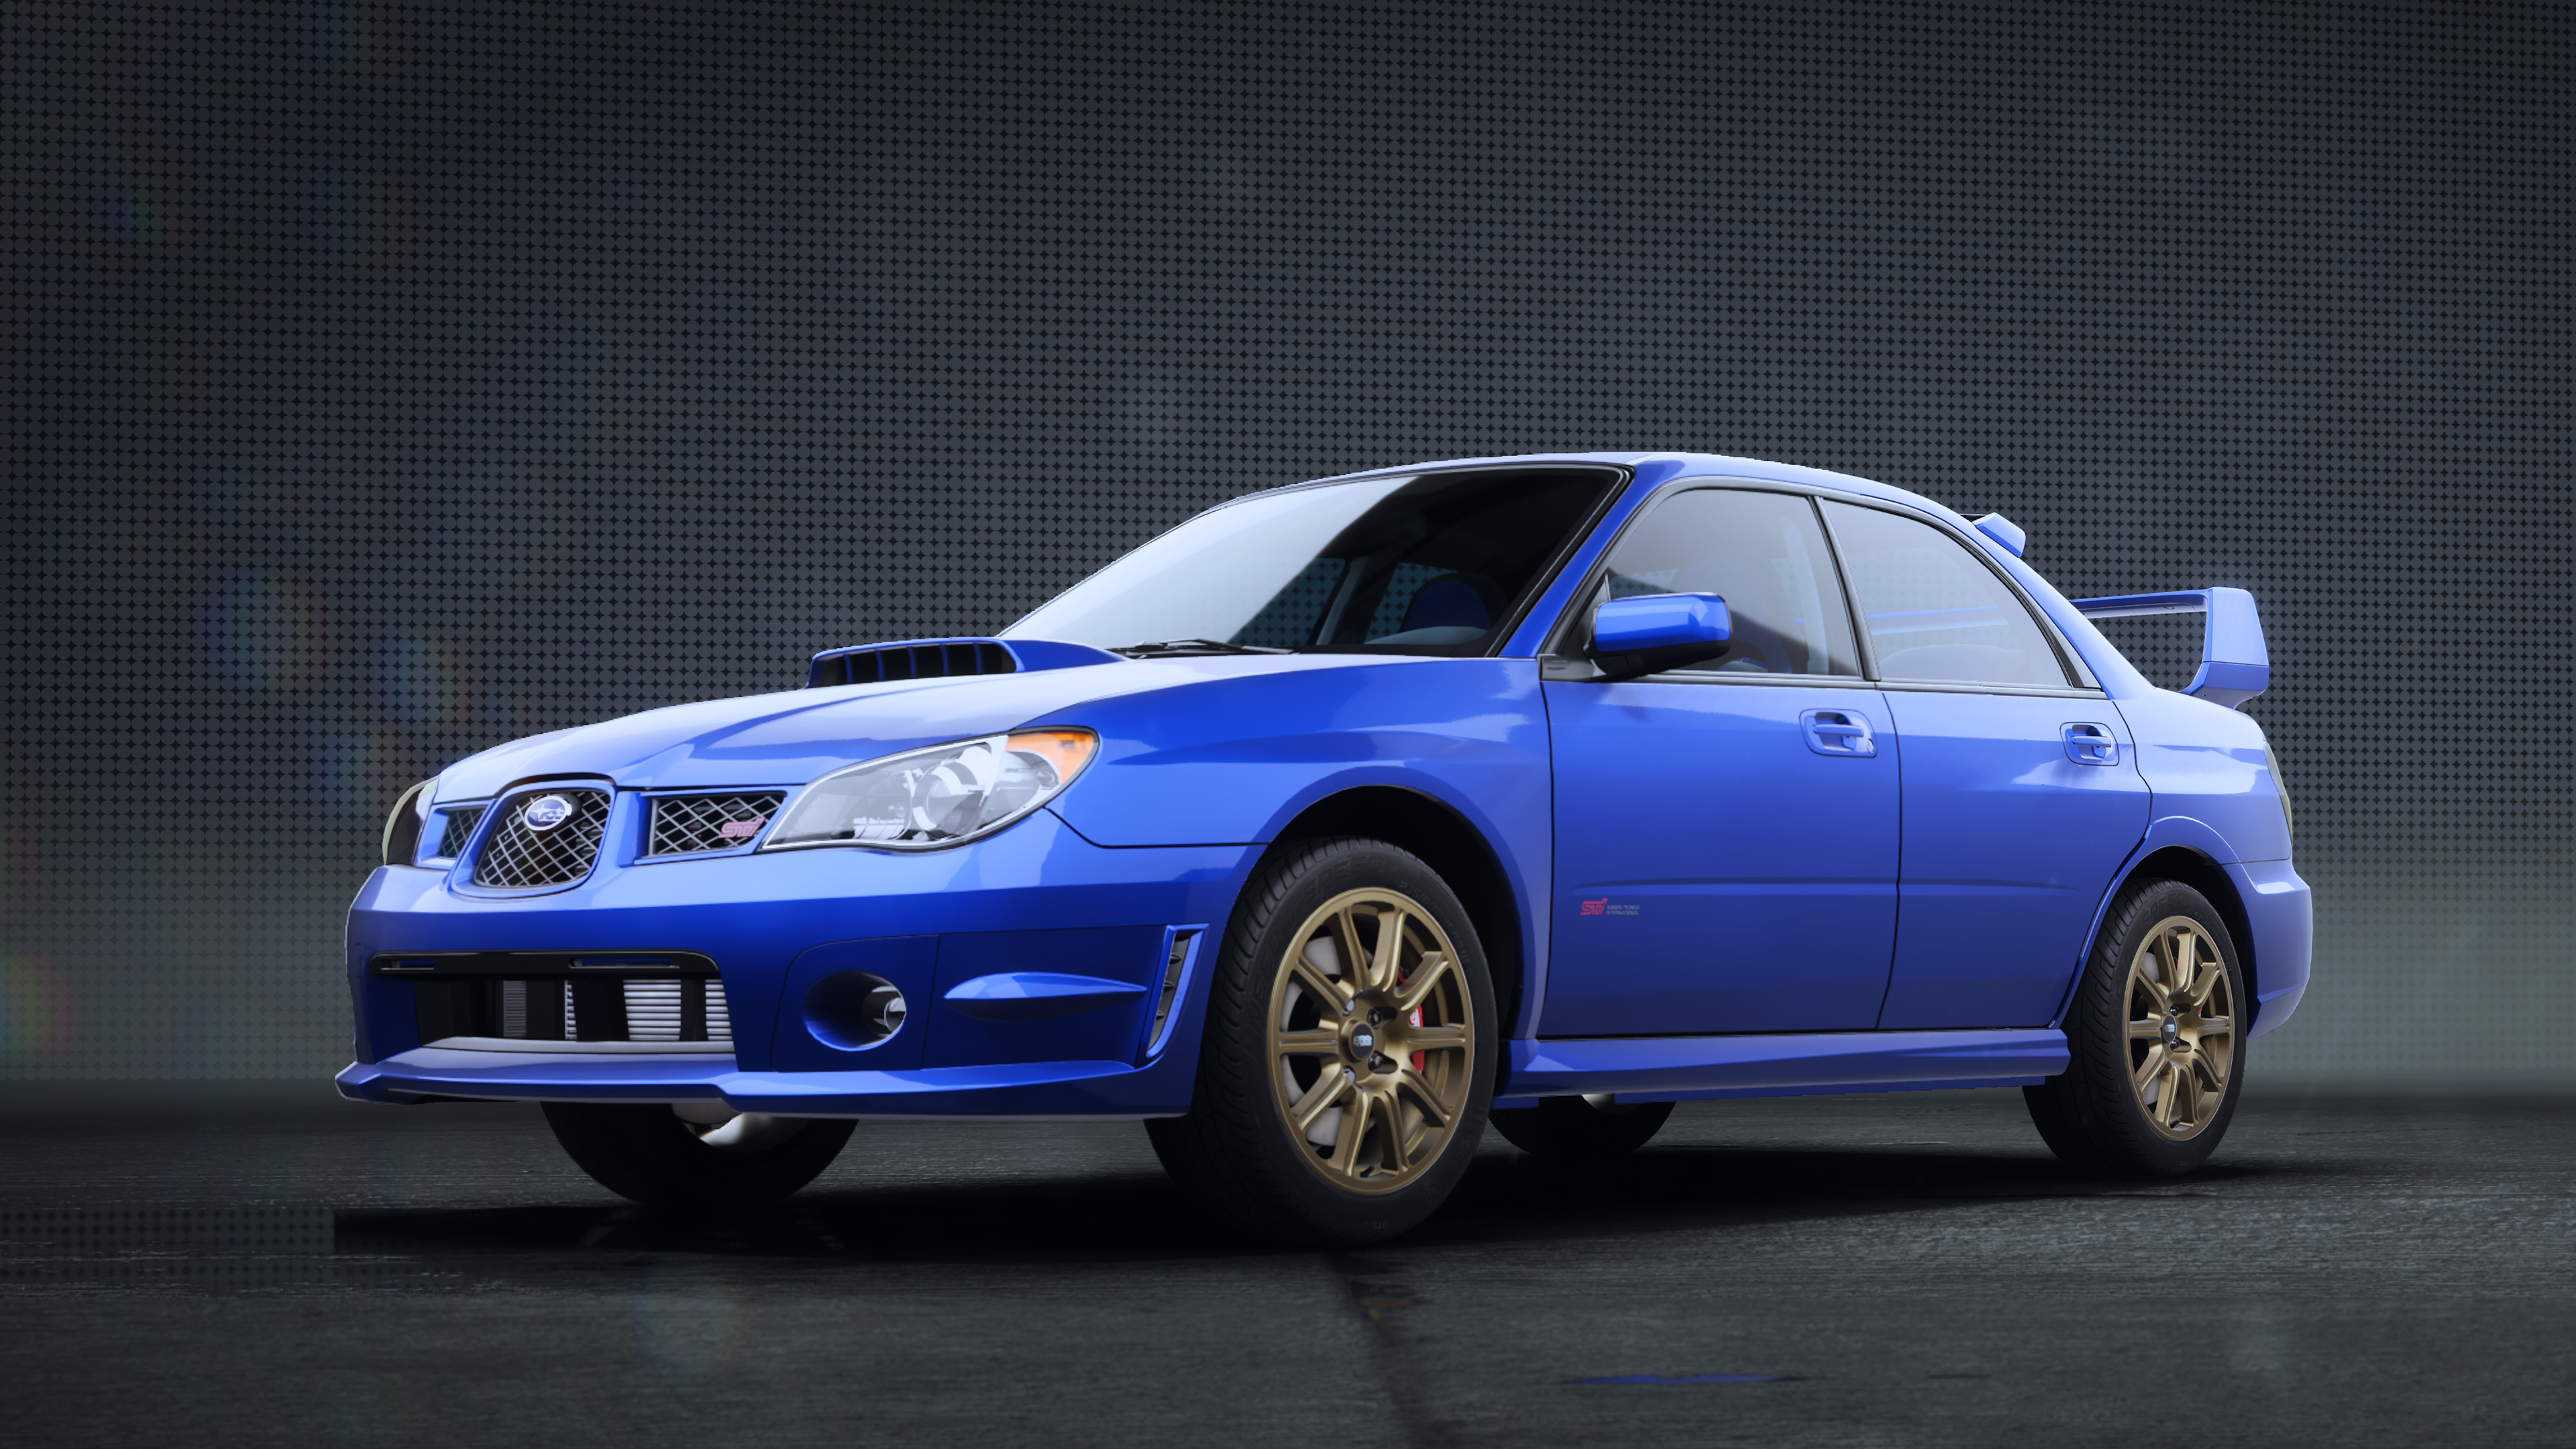 Subaru Impreza WRX STI (2006) | Need for Speed Wiki | Fandom